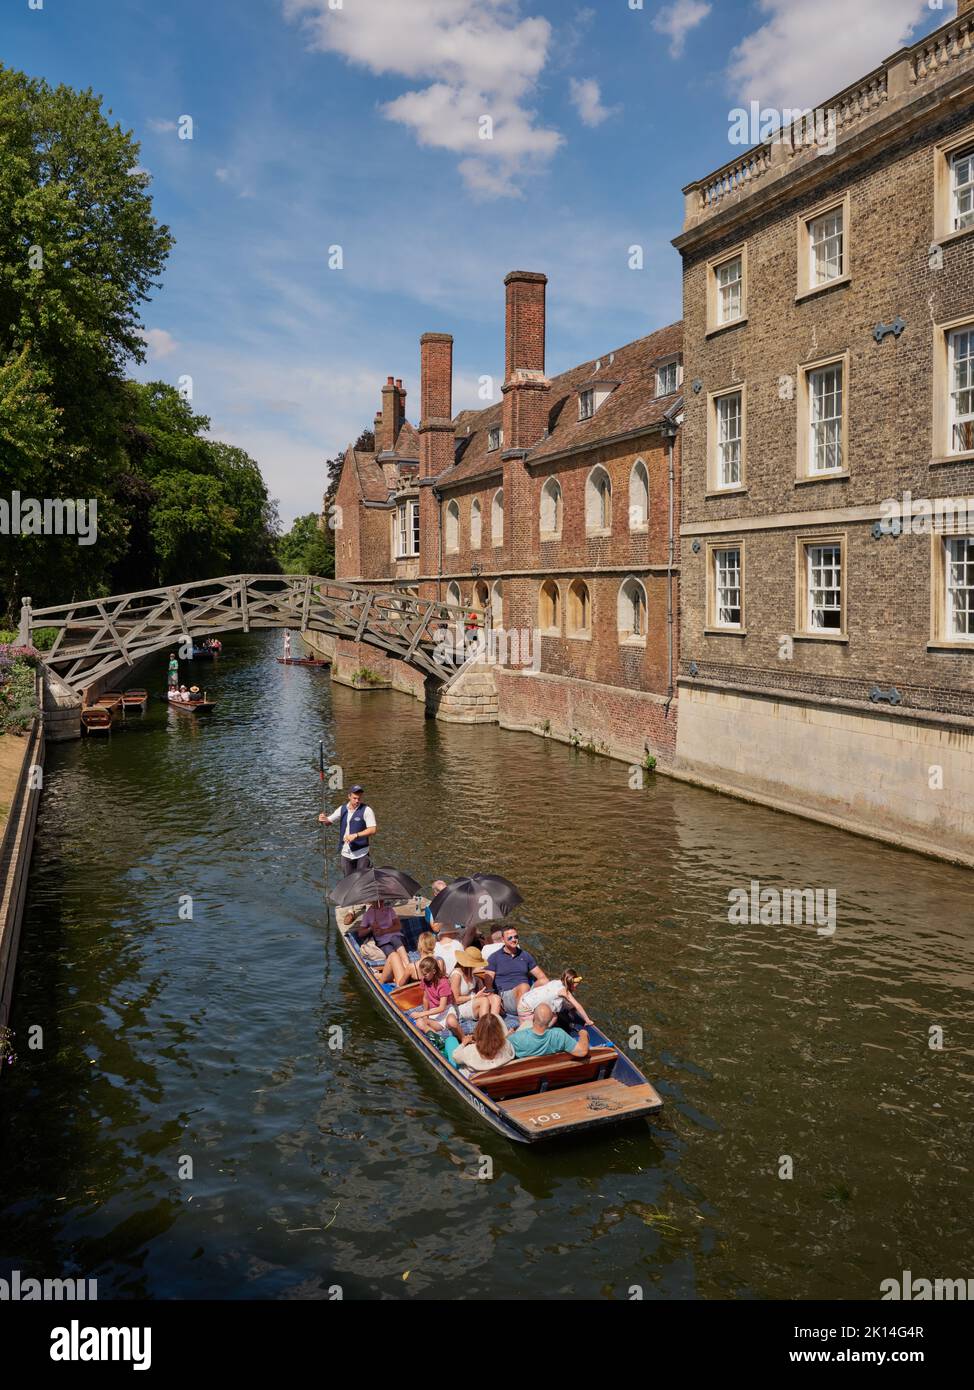 Le pont Mathématique de l'autre côté de la rivière Cam et les touristes d'été qui se sont mis à l'honneur au Queens College de Cambridge Cambridgeshire, Angleterre, Royaume-Uni Banque D'Images